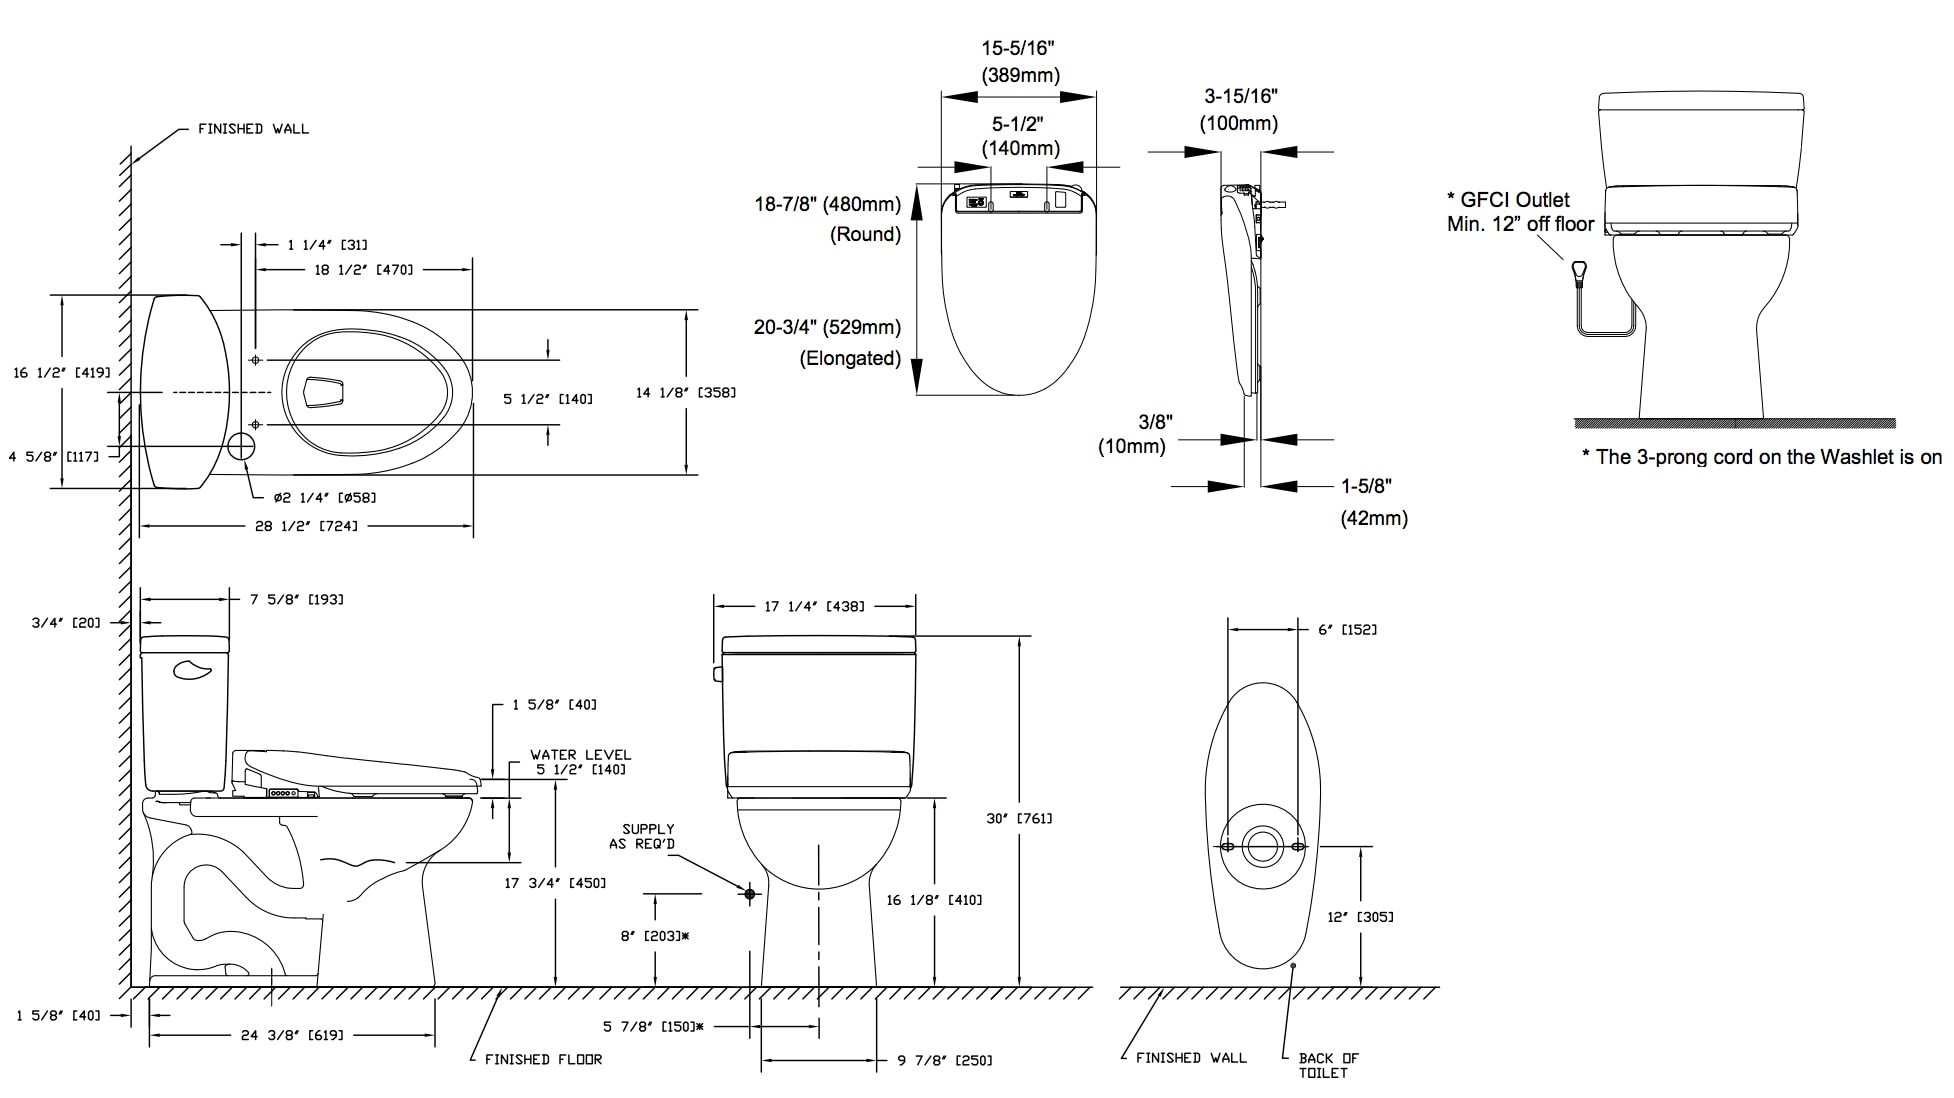 drake-ii-washlet-s300e-two-piece-toilet-1.28-gpf-diagram.png